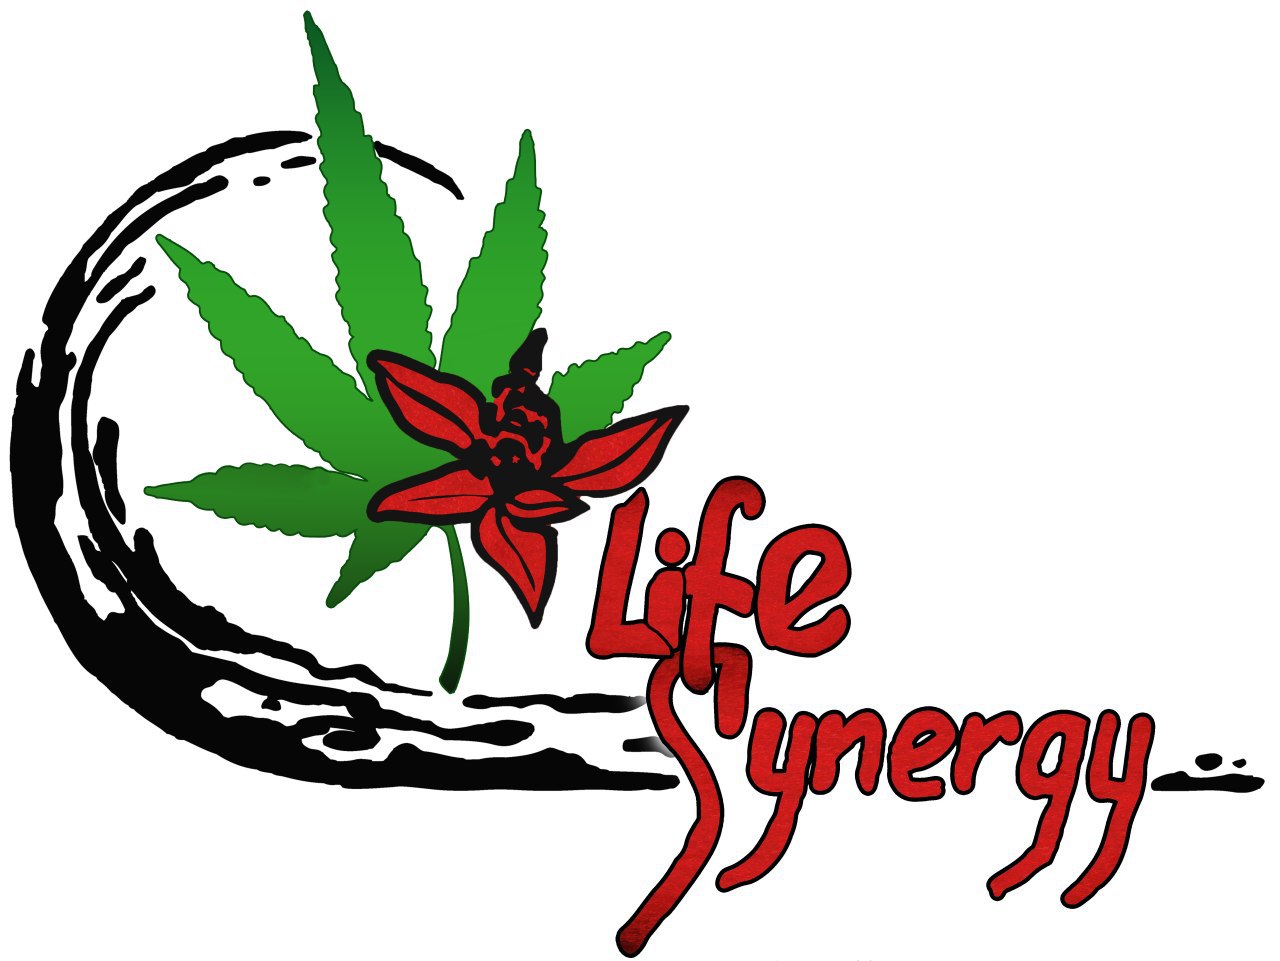 4life-synergy